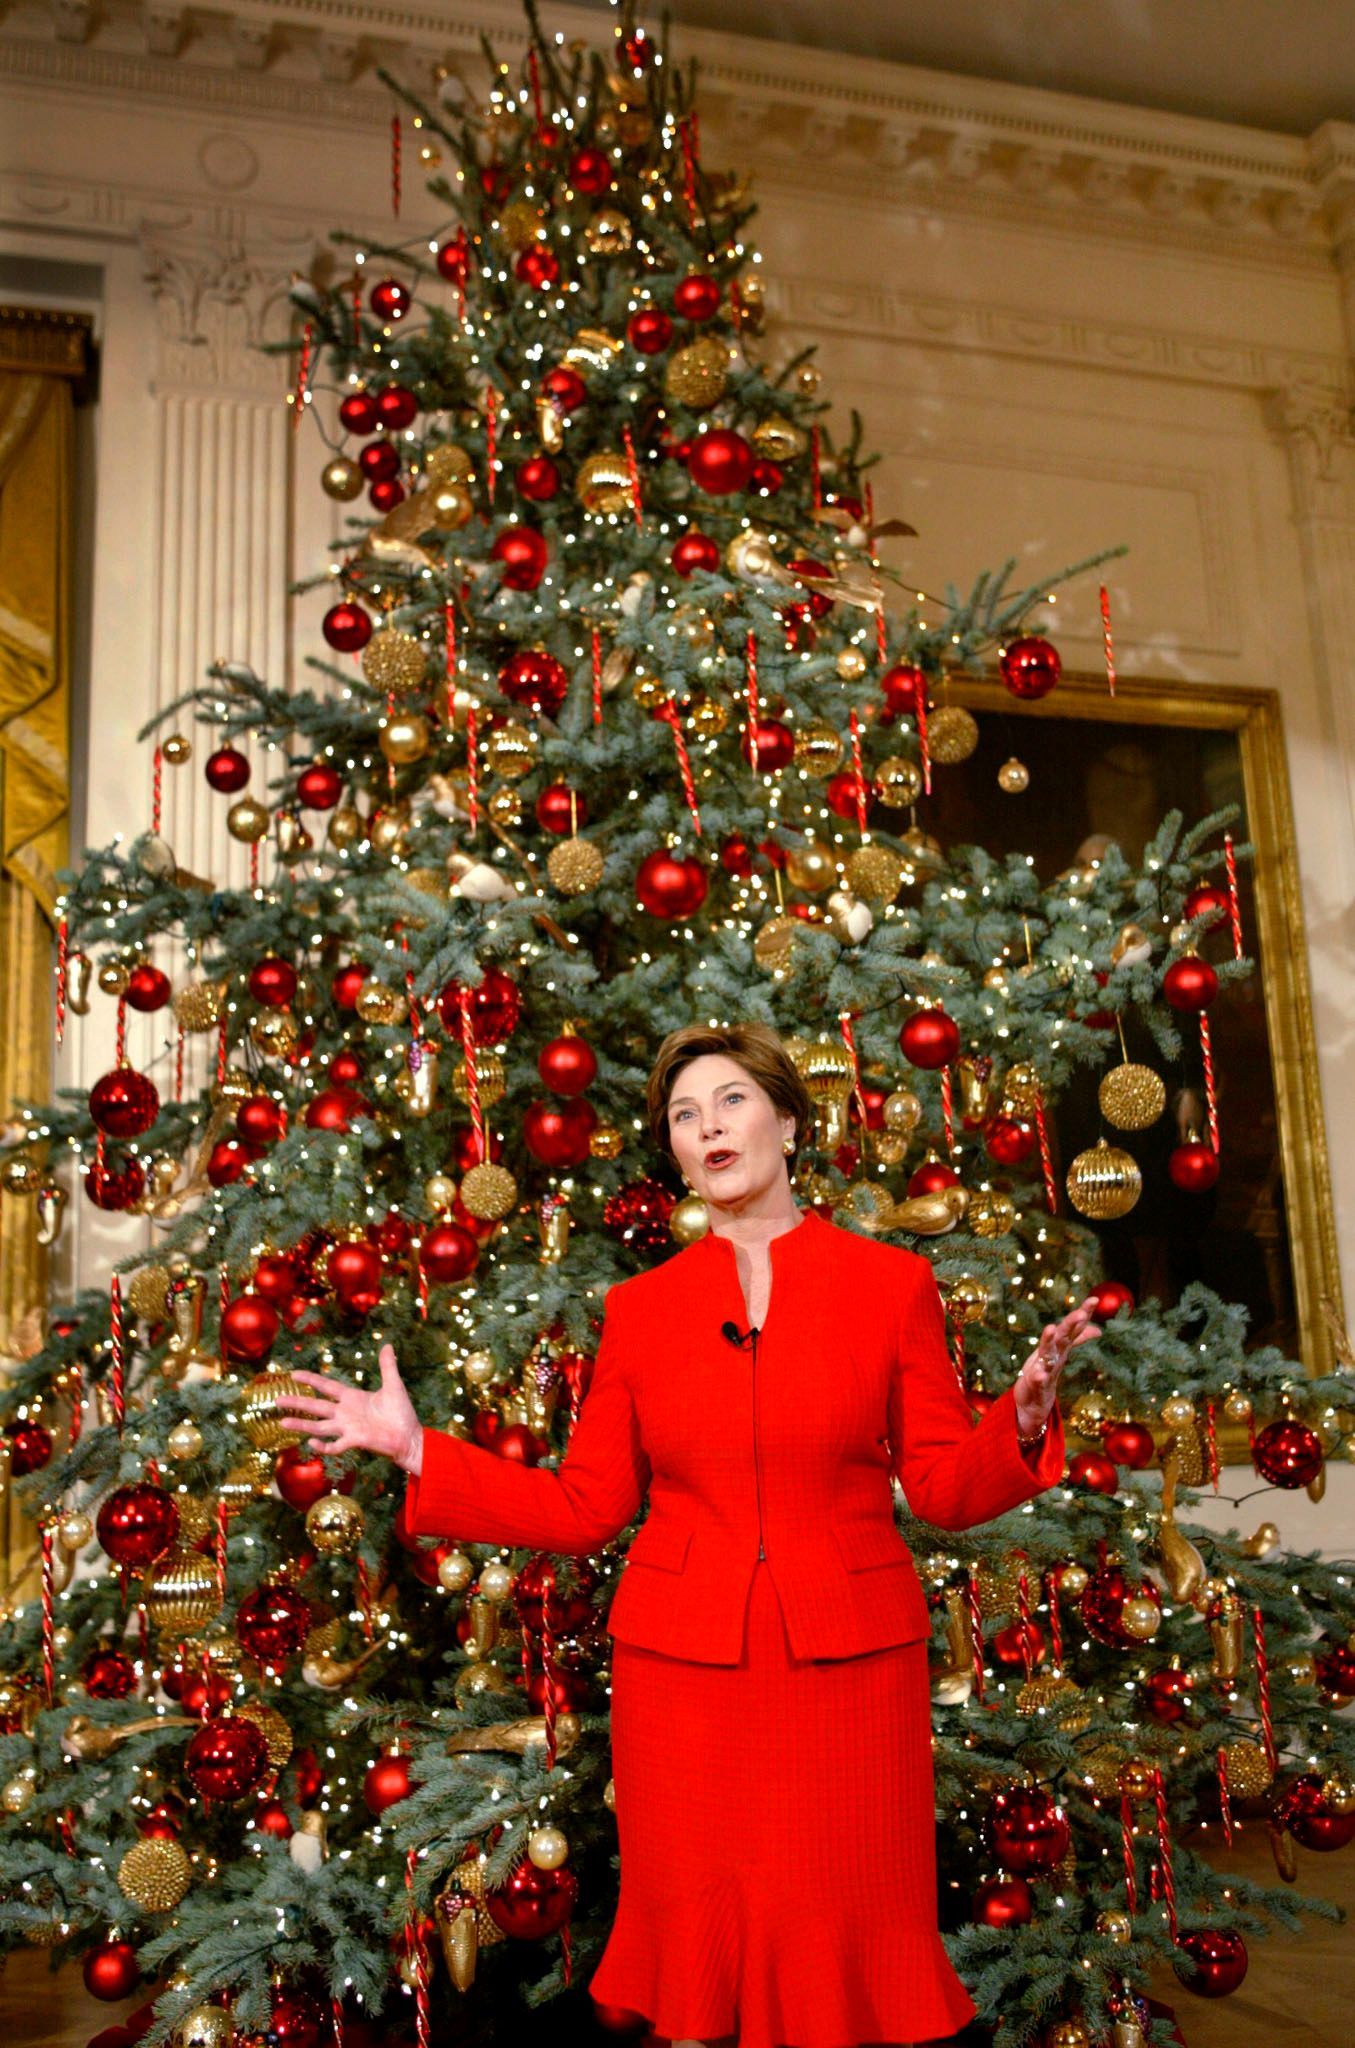 Ton in Ton mit der Weihnachtsdeko präsentiert Laura Bush 2002 den Baum.